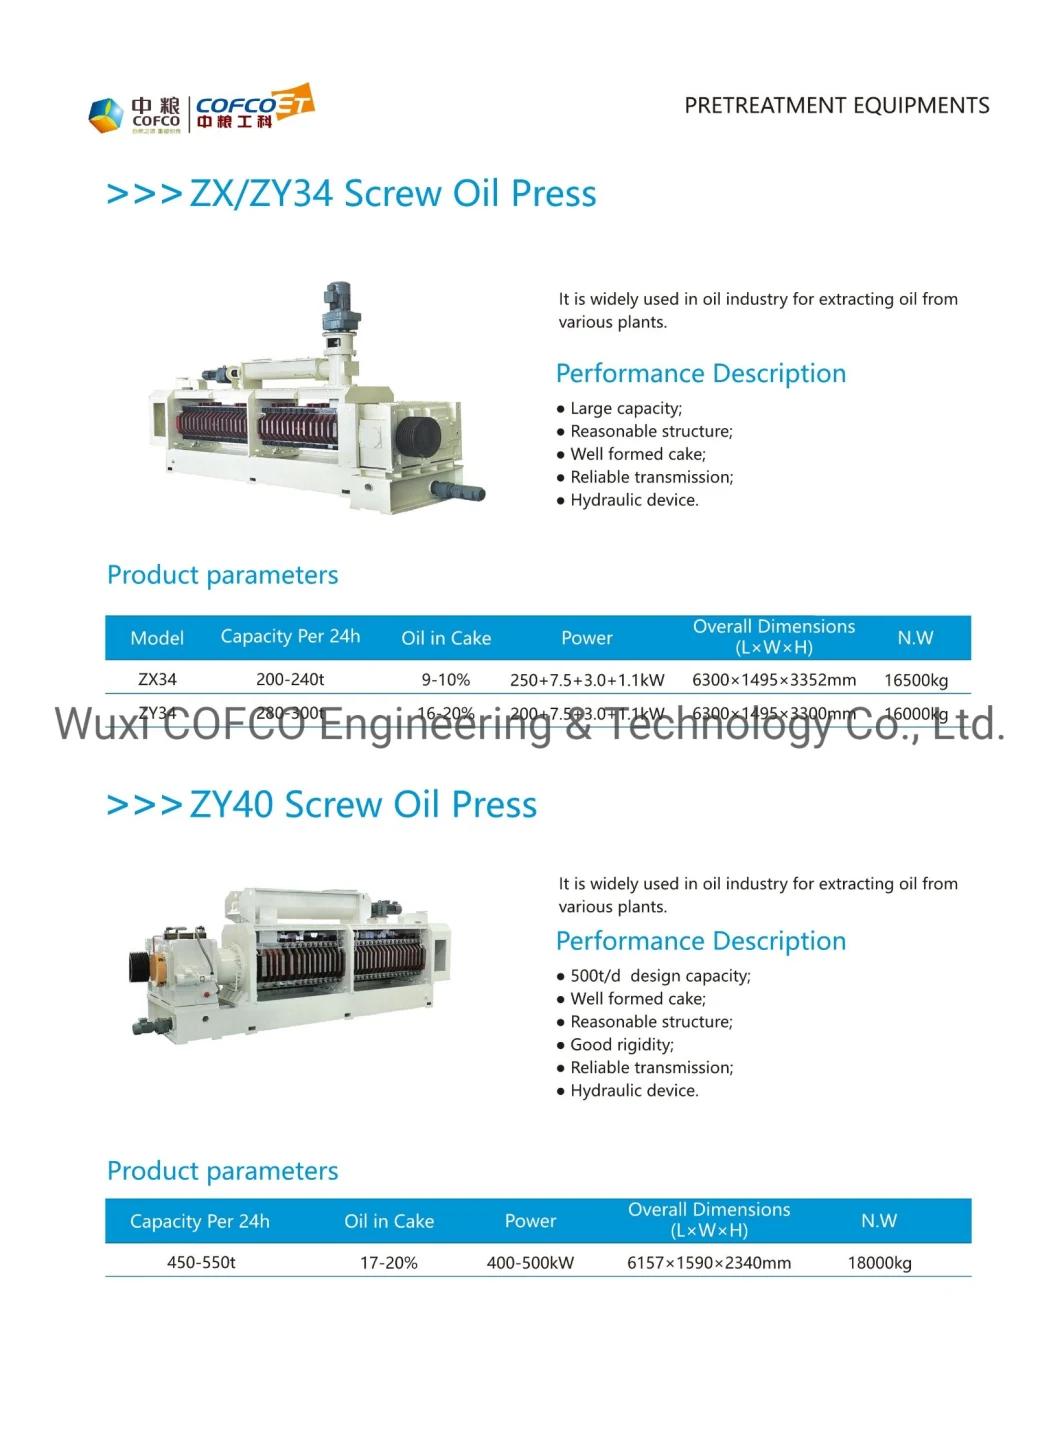 COFCOET ZX/ZY Series Oil Press